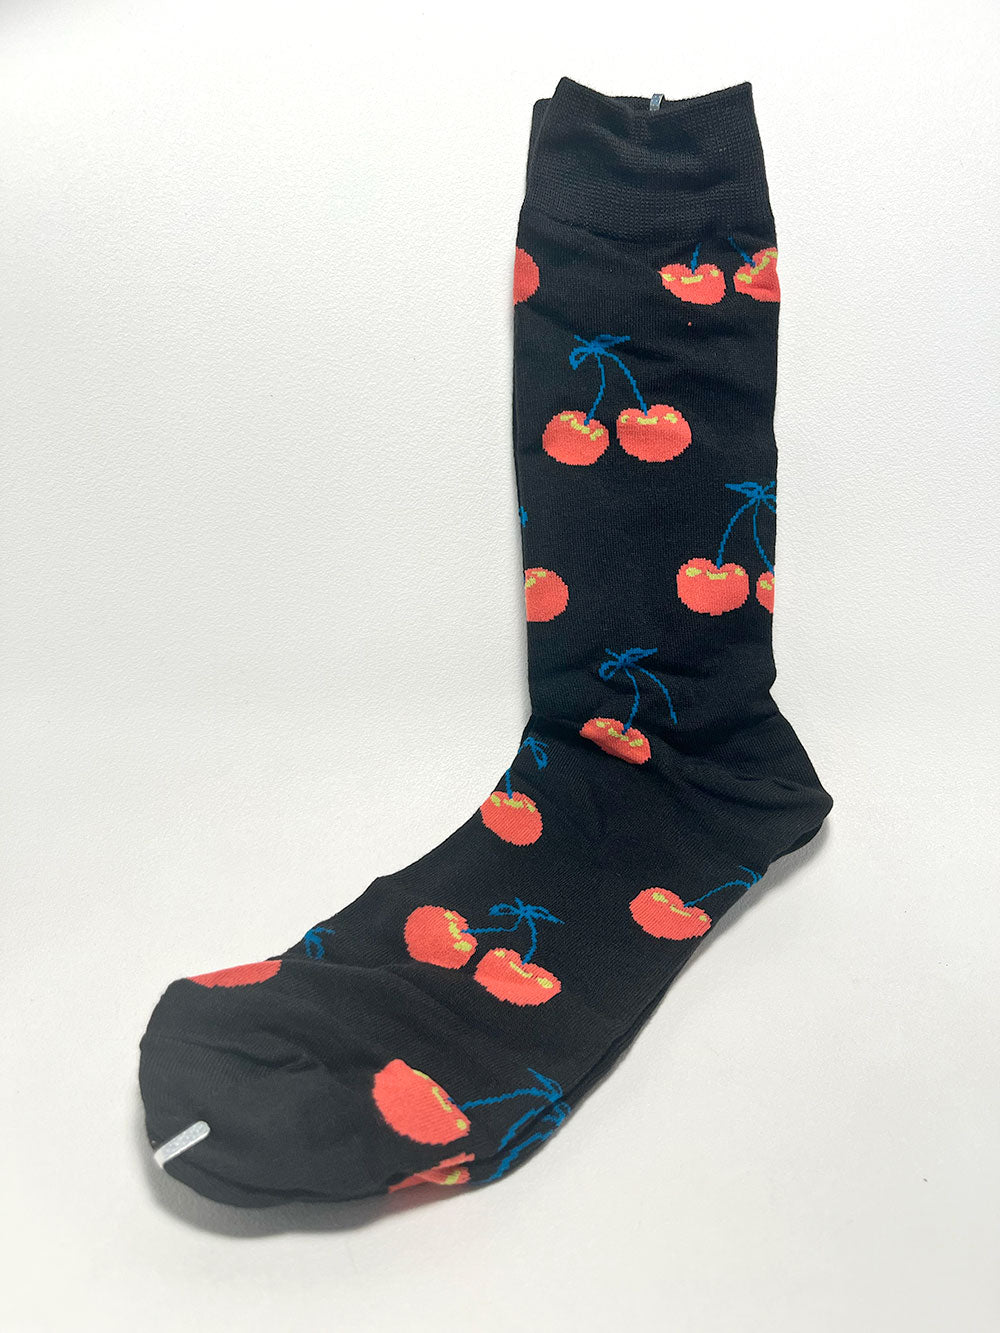 Lover sock five